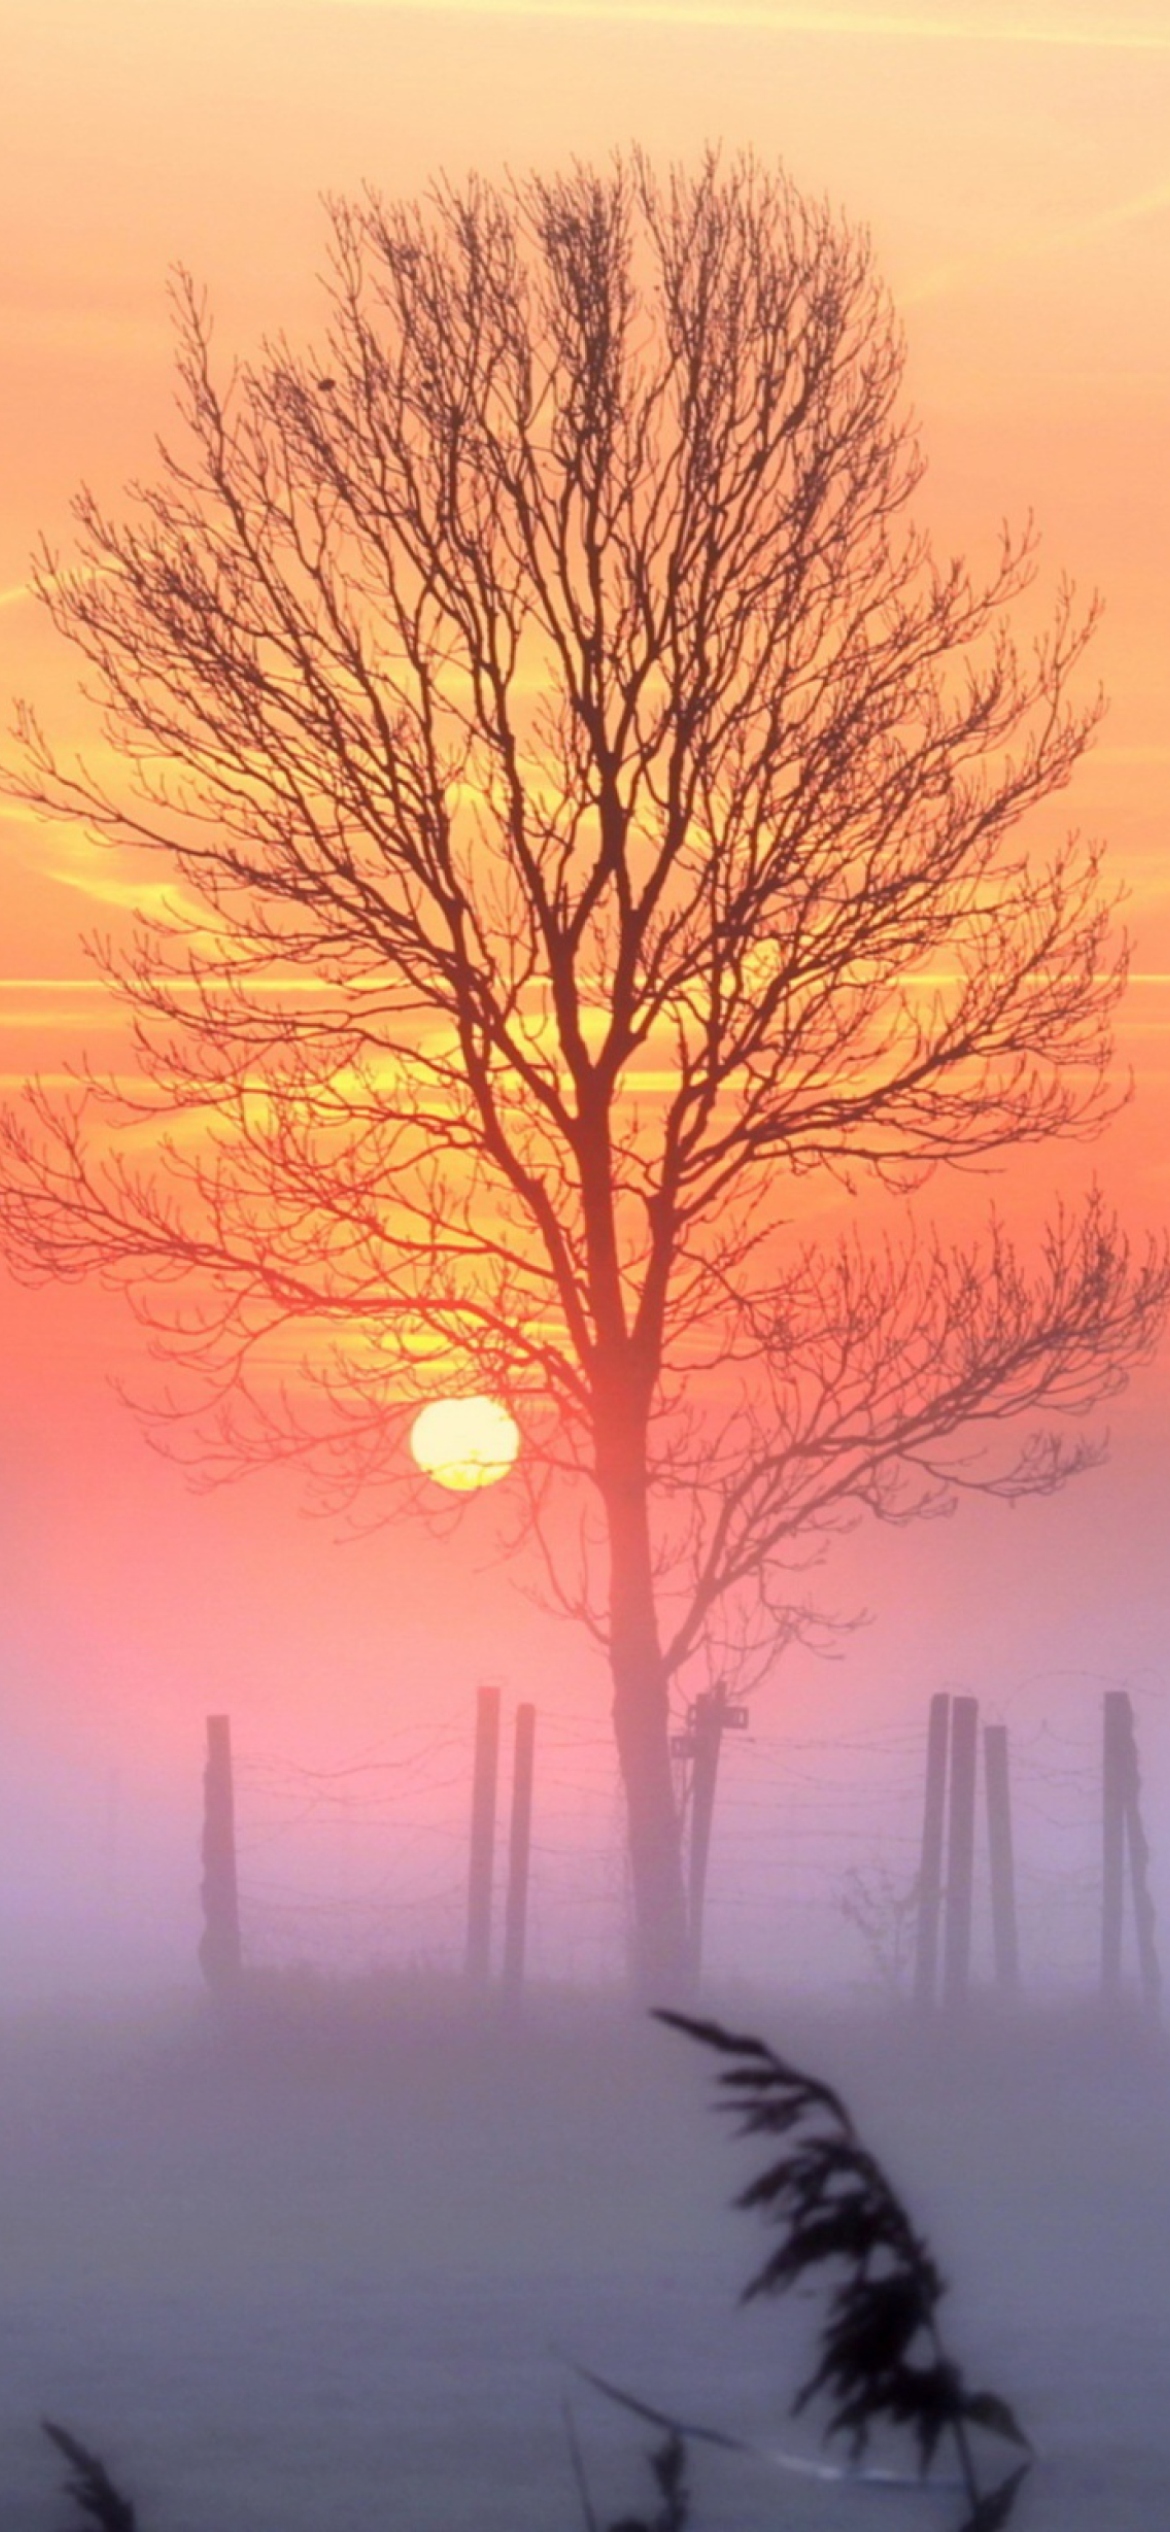 Sunset And Mist screenshot #1 1170x2532